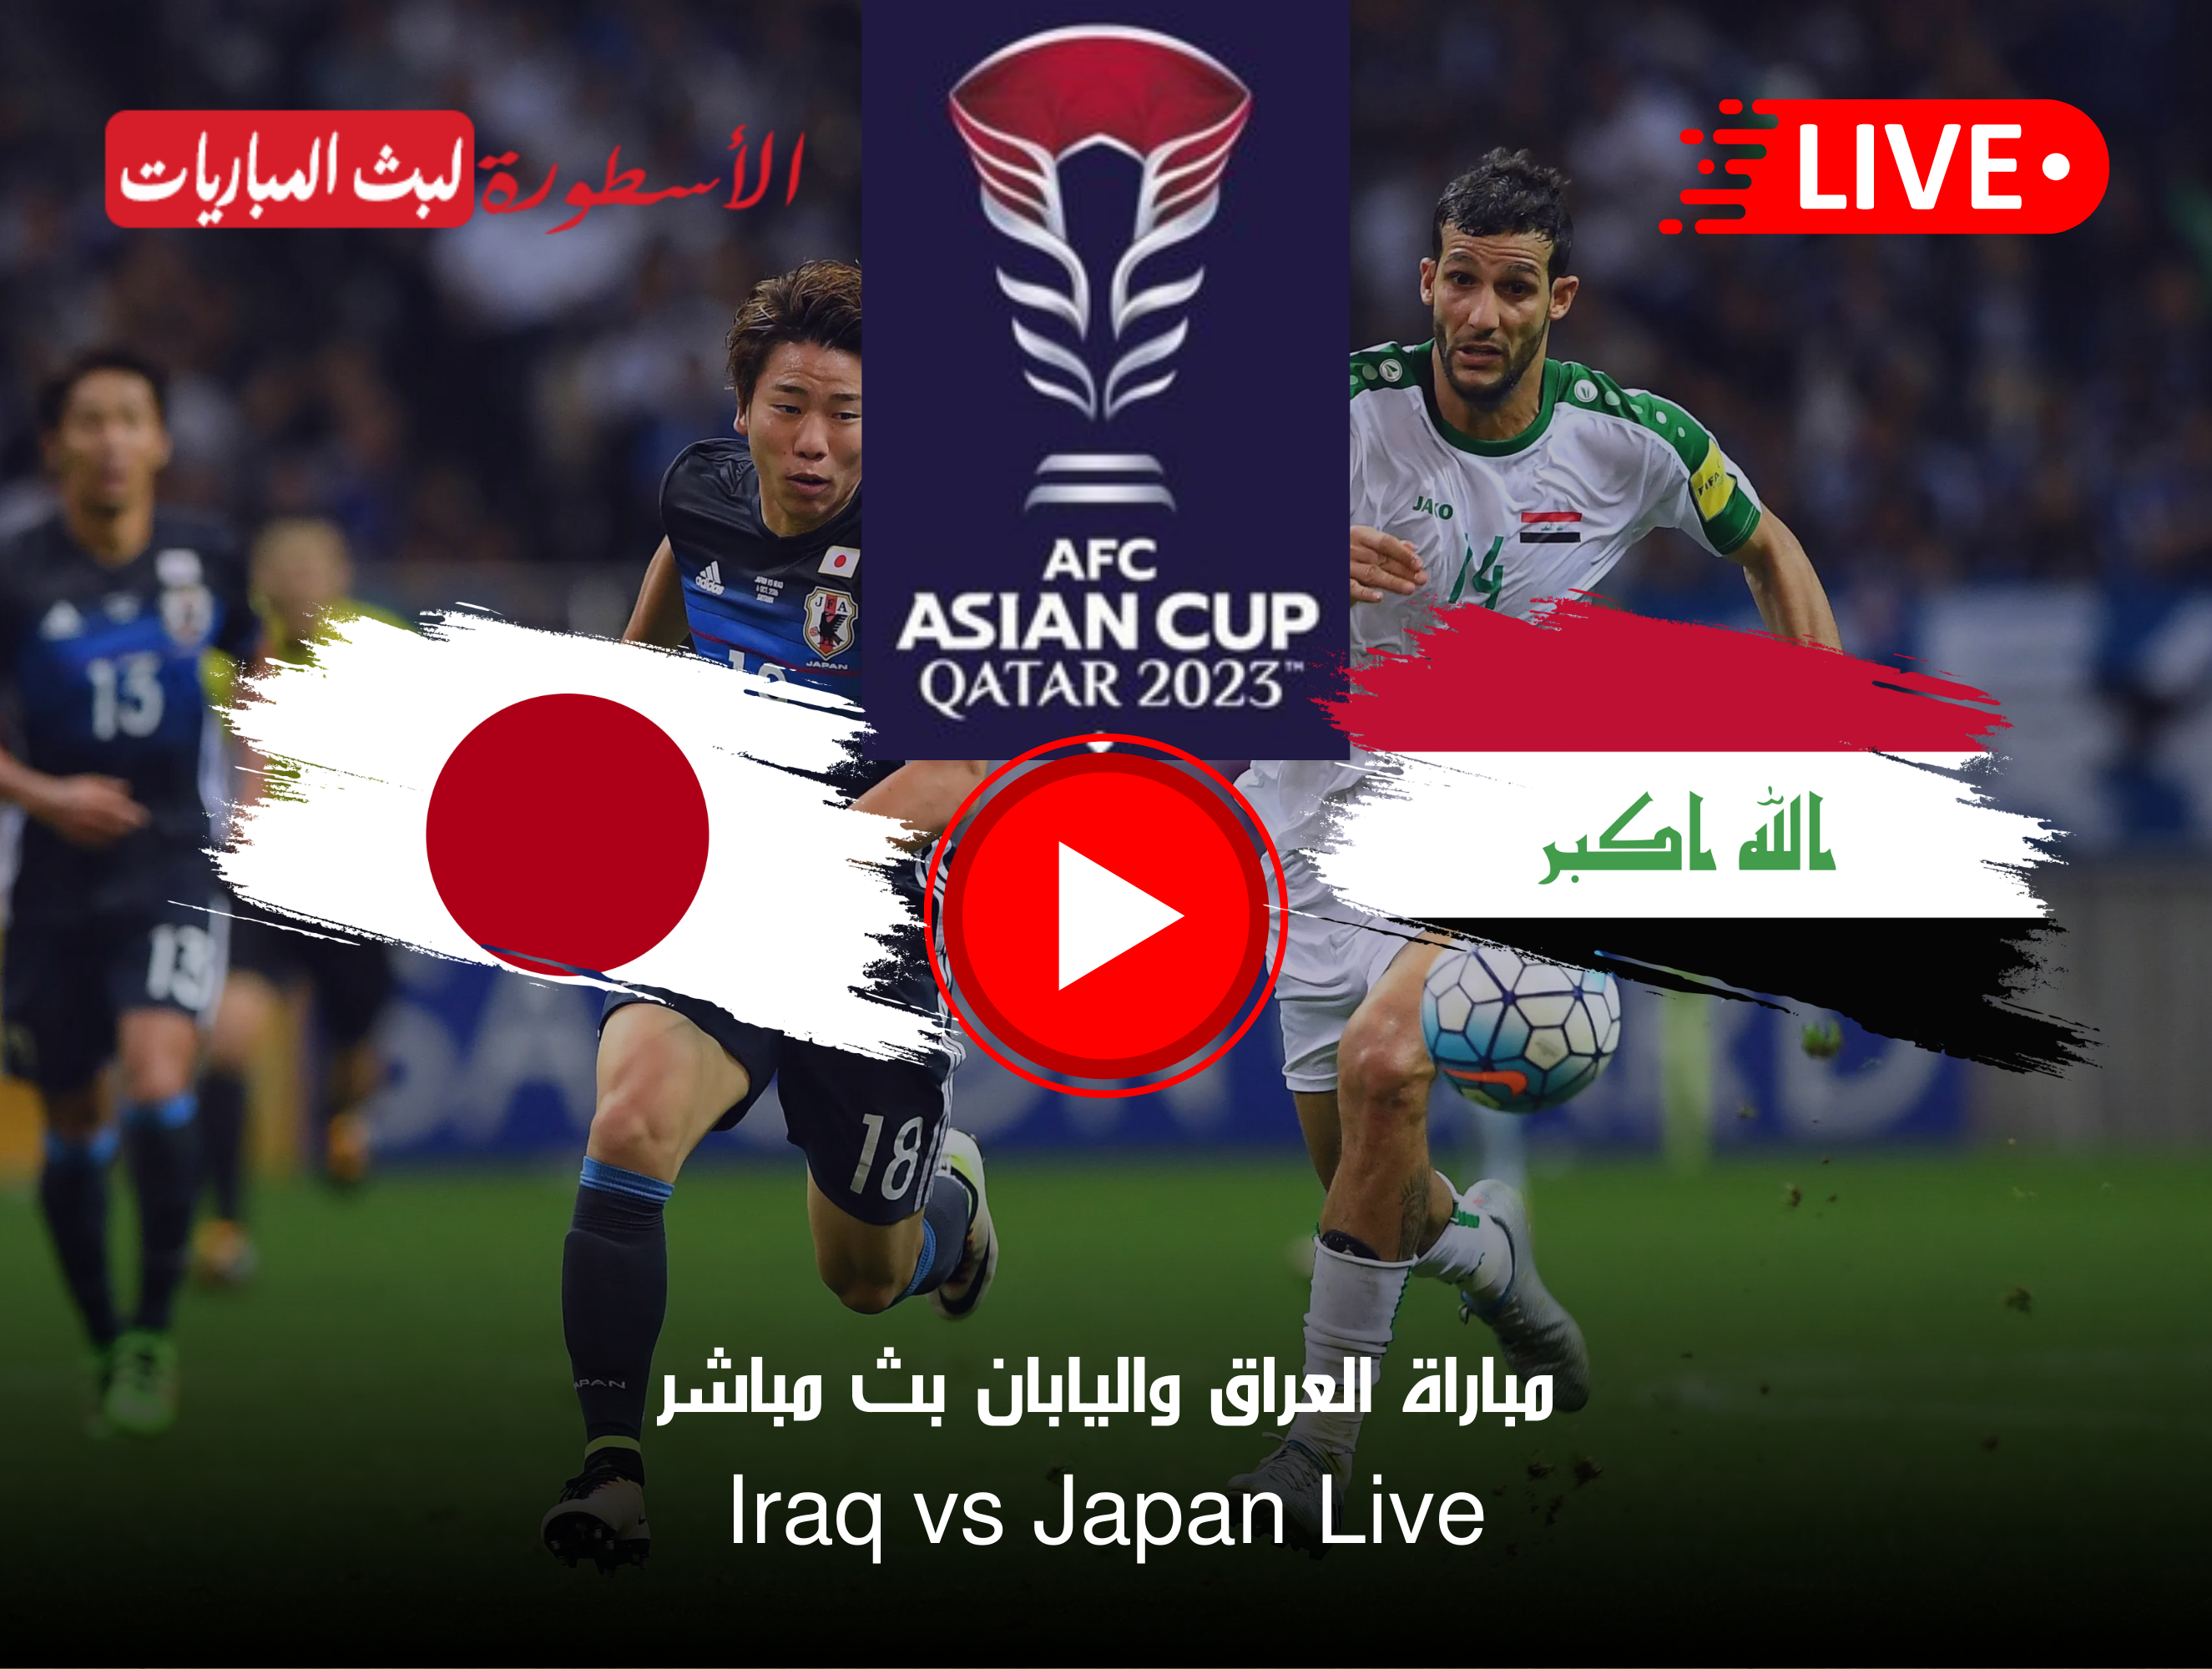 مباراة العراق واليابان بث مباشر كأس آسيا على قناة beIN ASIAN CUP 1 الآن